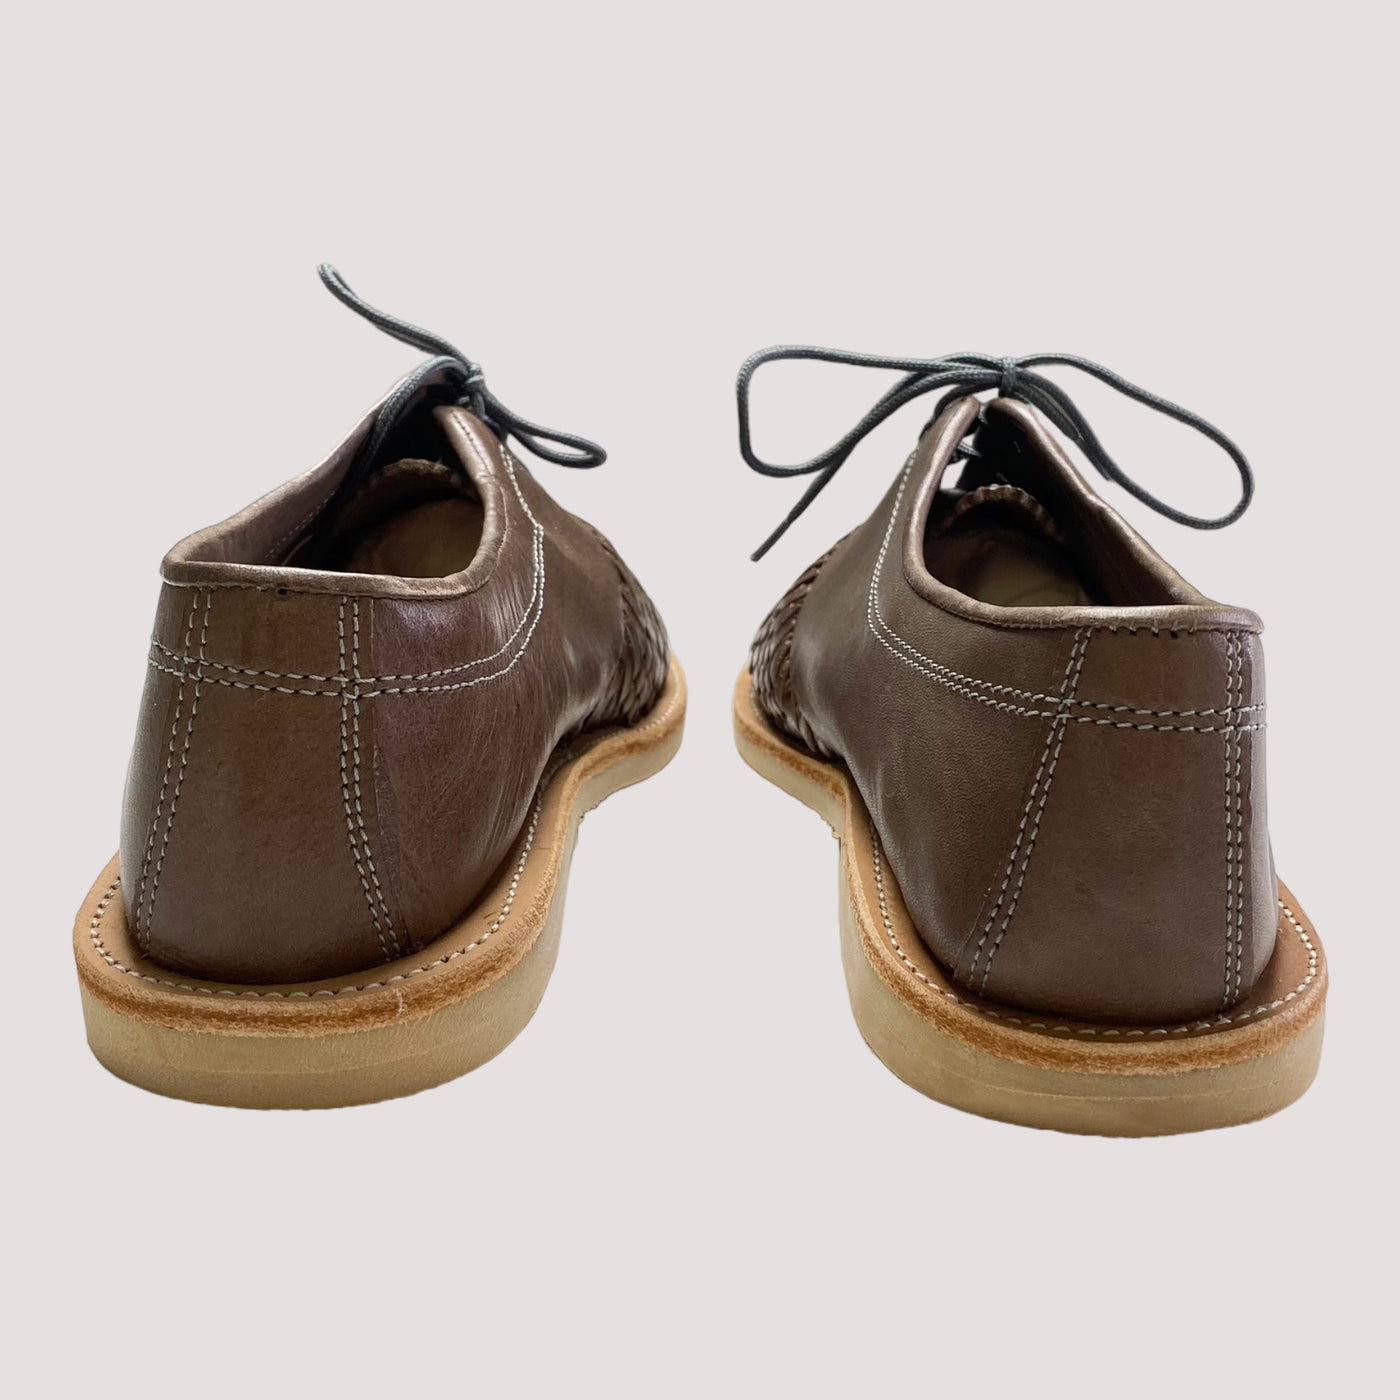 Hidalgo shoes, dark brown / grey | 40